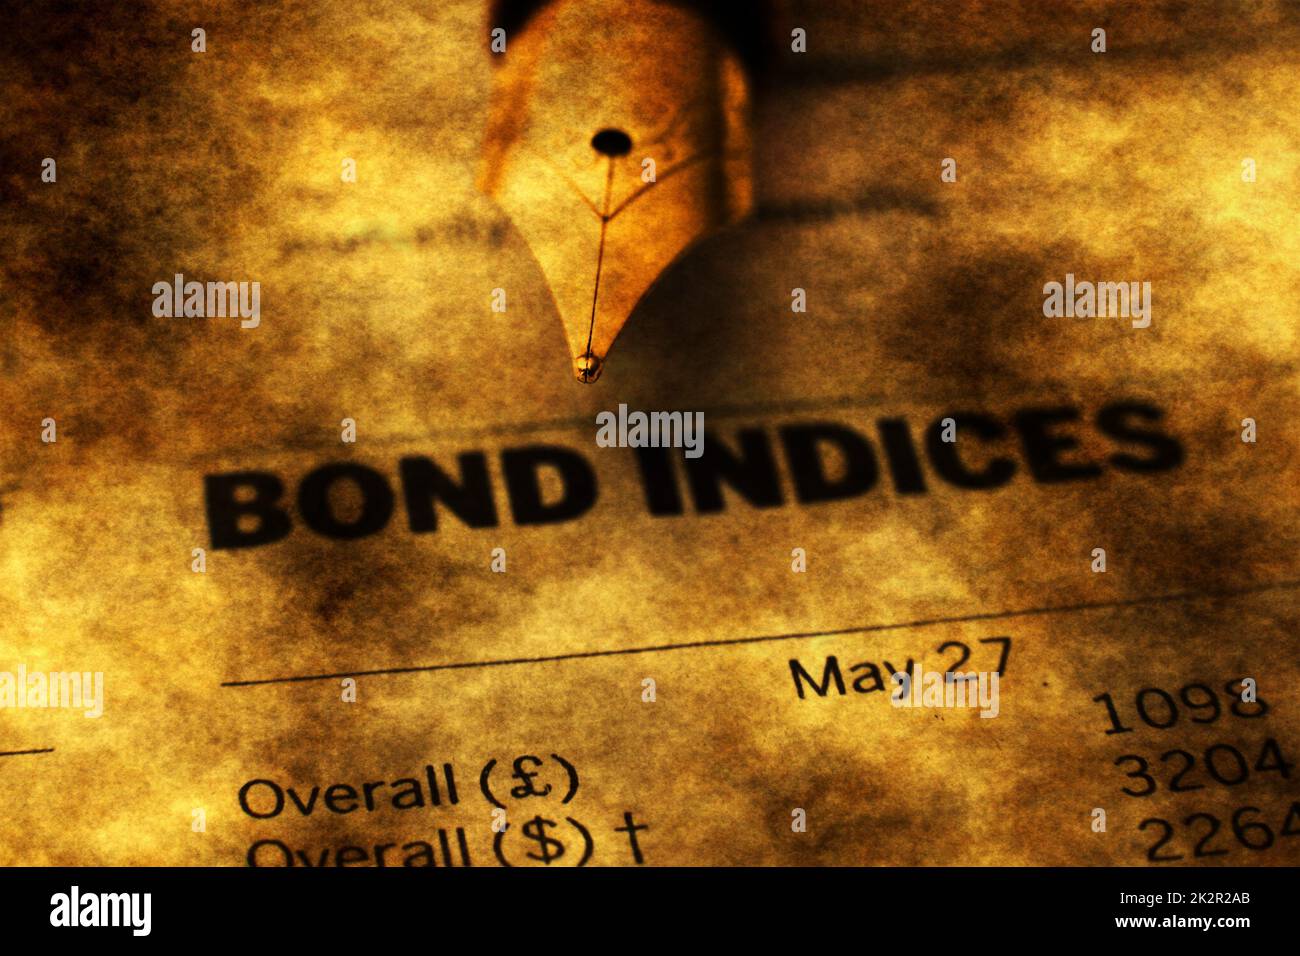 Bond indices Stock Photo